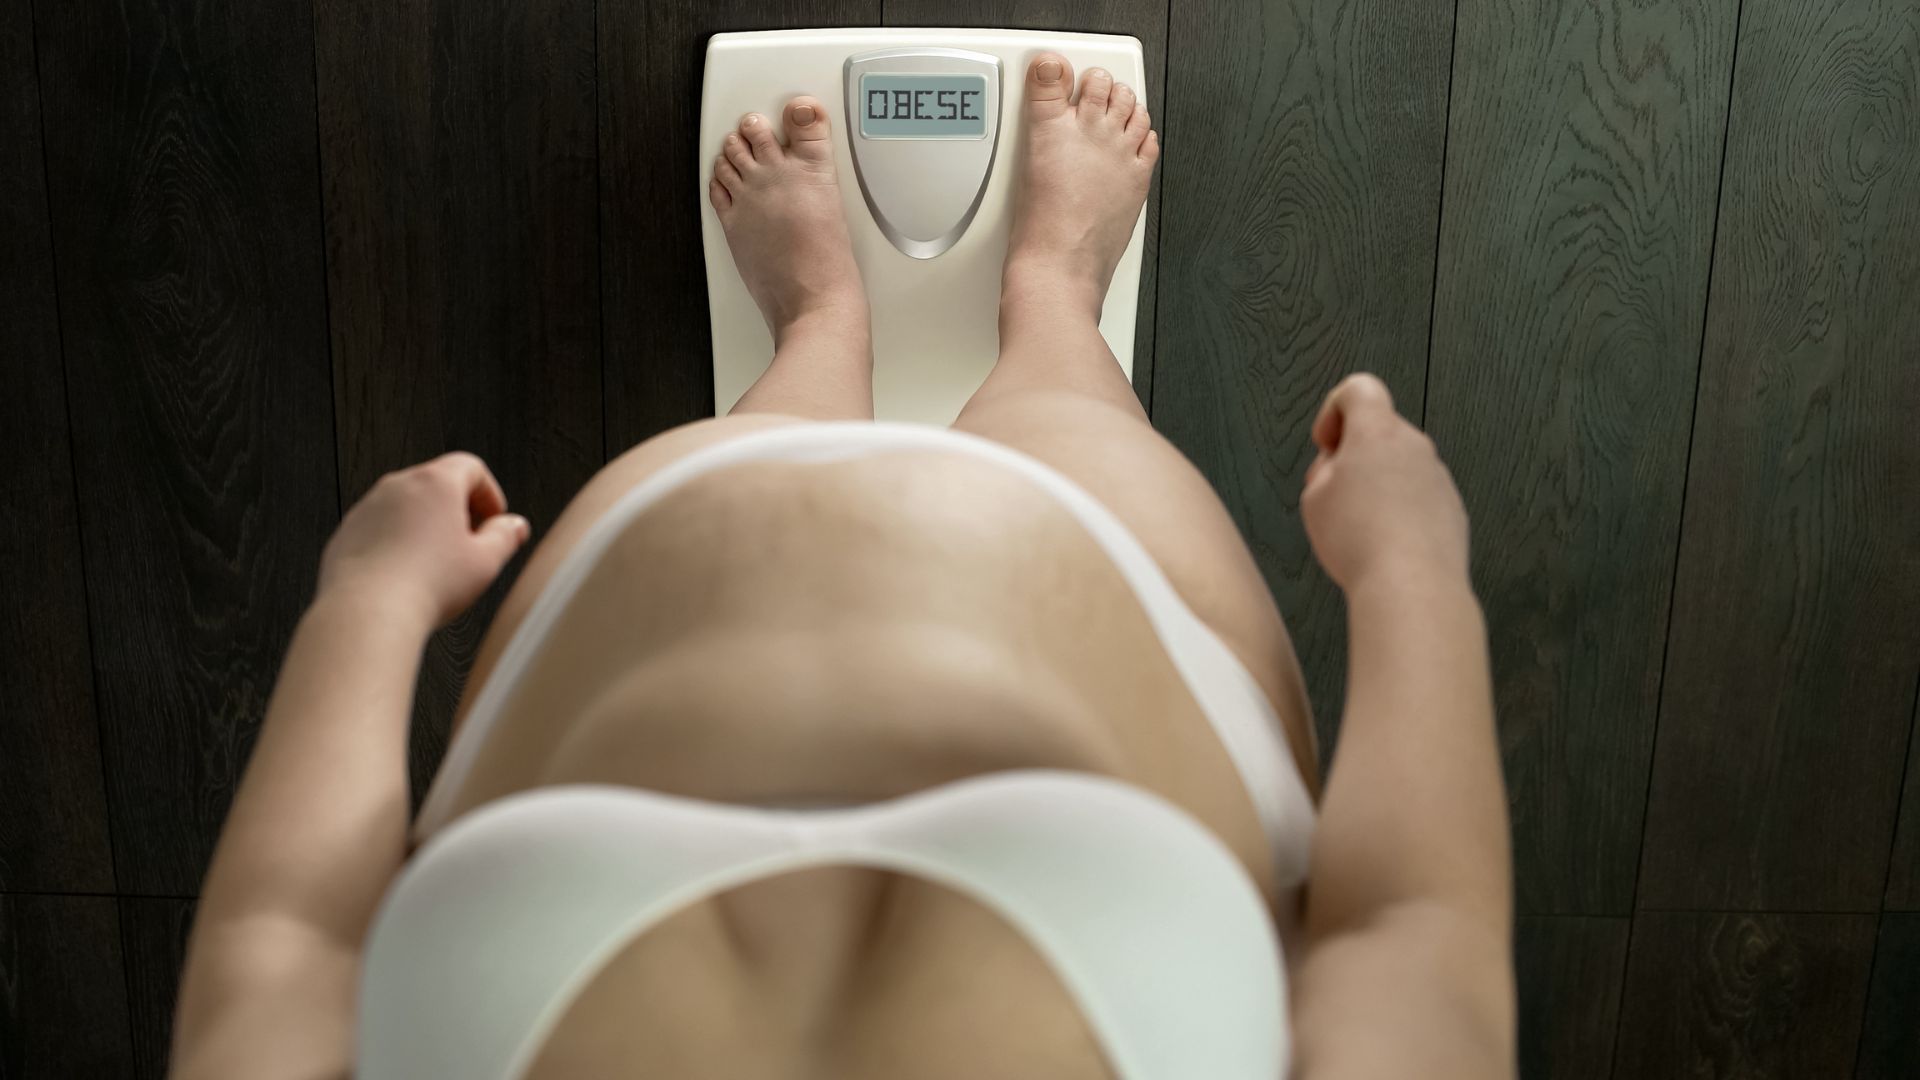 Enceinte et obèse : « On m’a forcé à faire deux fois le test du diabète gestationnel alors que je n’avais rien »